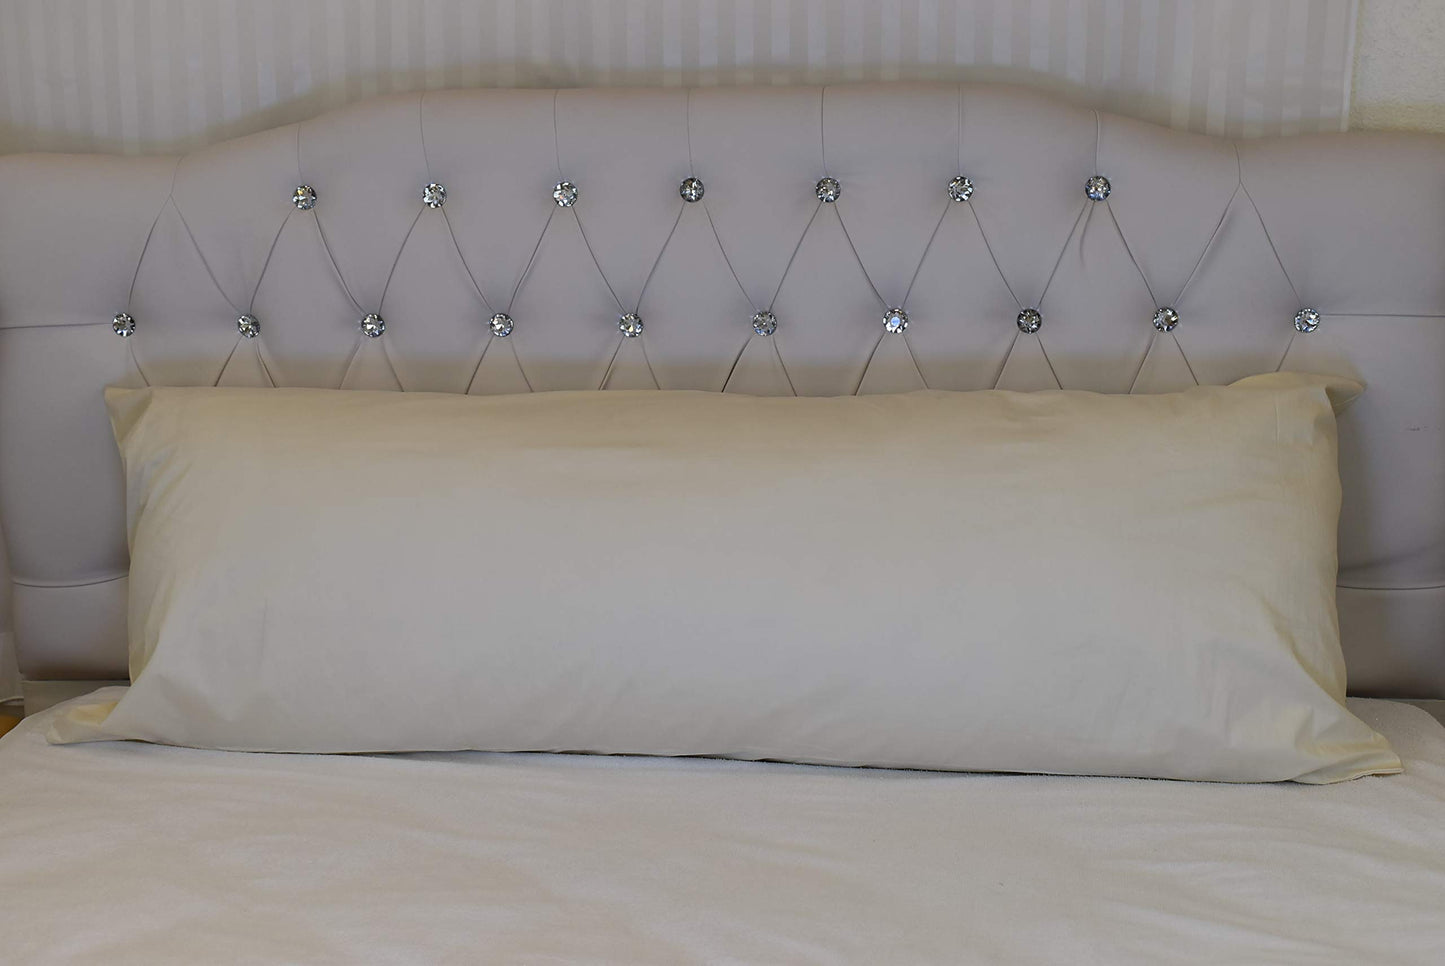 MoonRest Body Pillow Pillowcase Luxury High Count Thread with Hidden Zipper -%100 Cotton